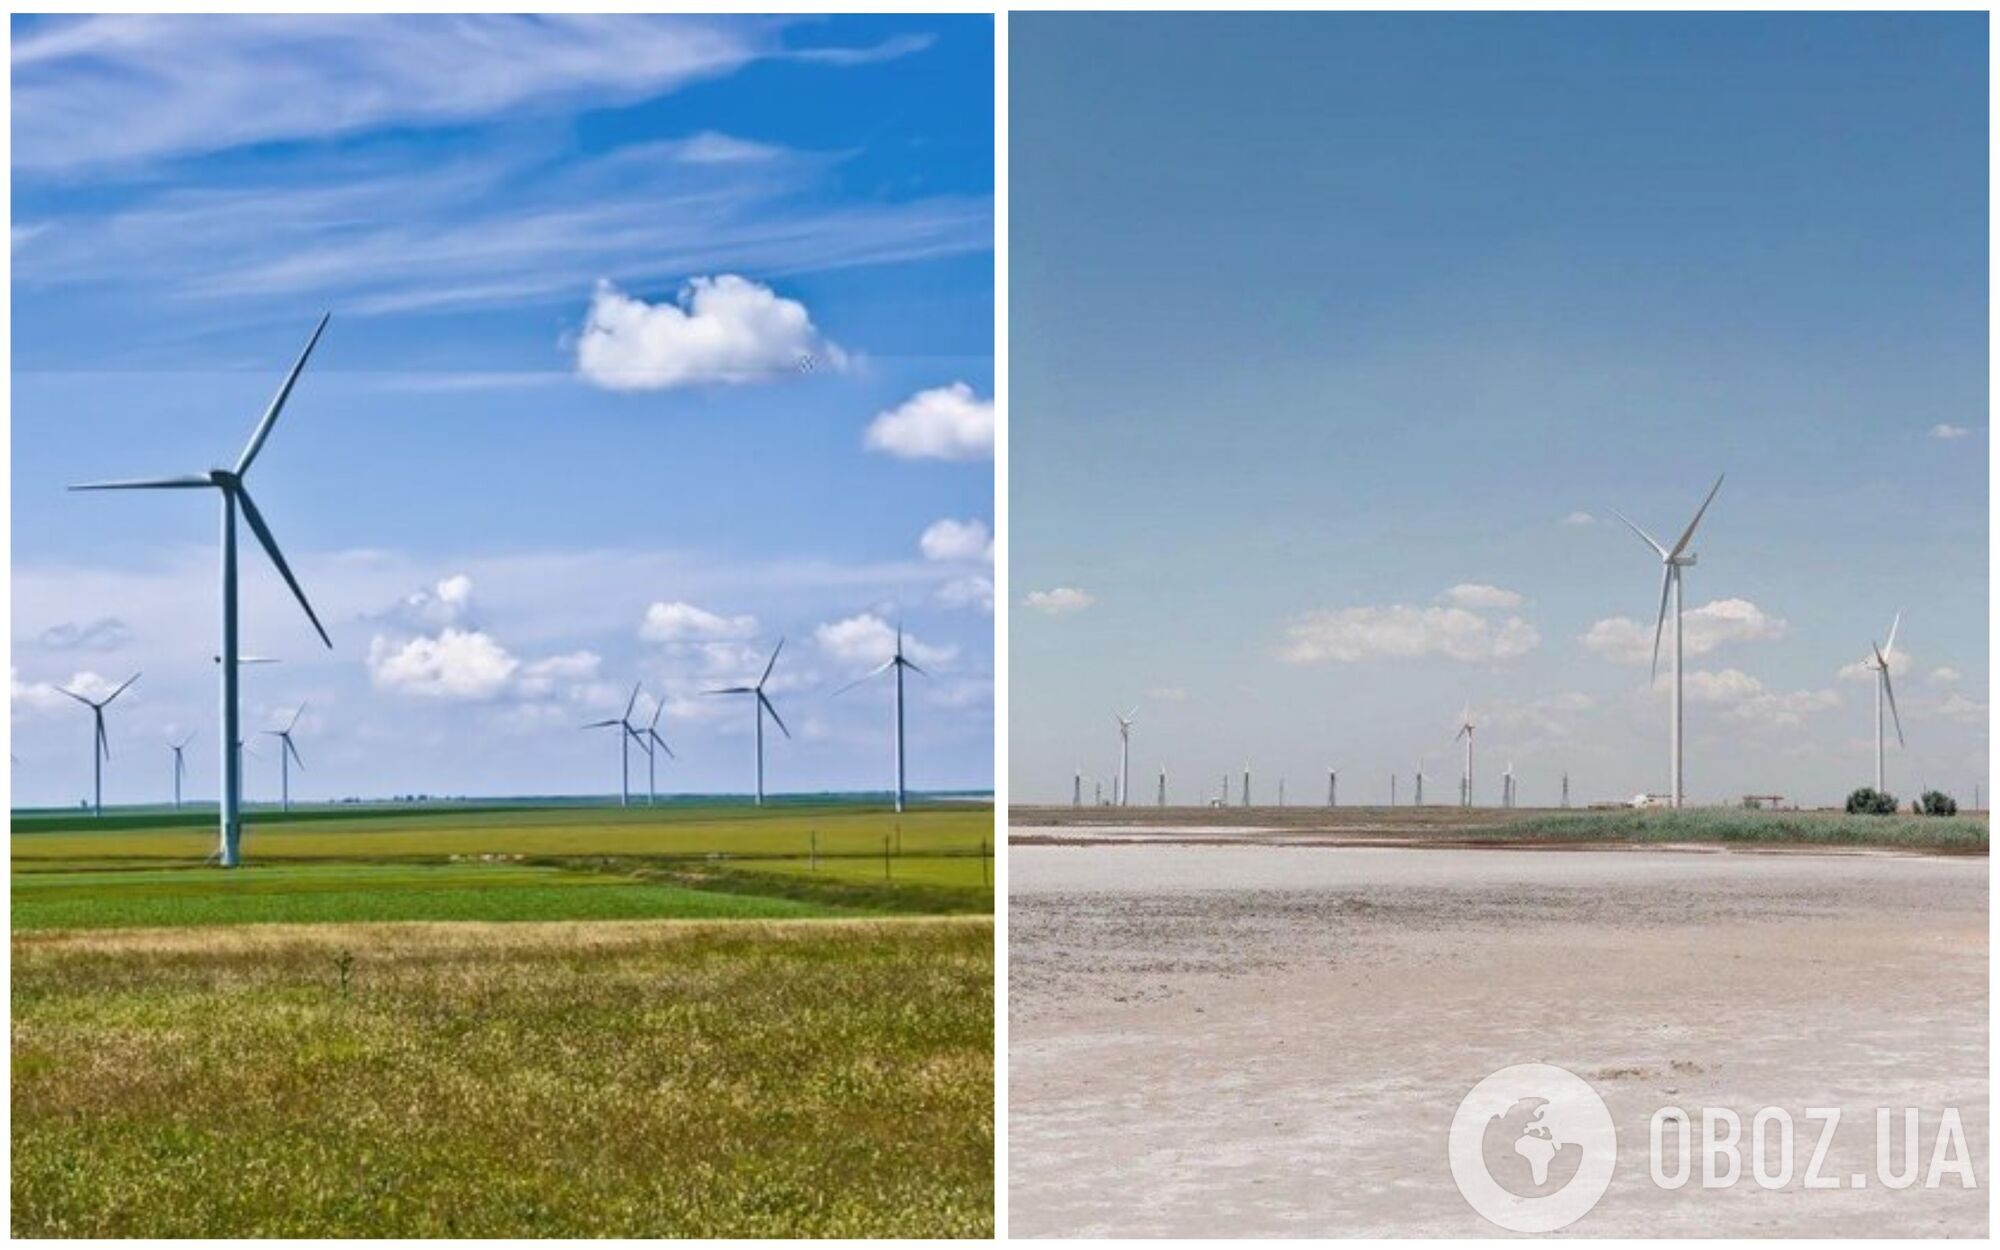 Ветроэлектростанция "Сивашская" – самая большая ветроэлектростанция в Украине